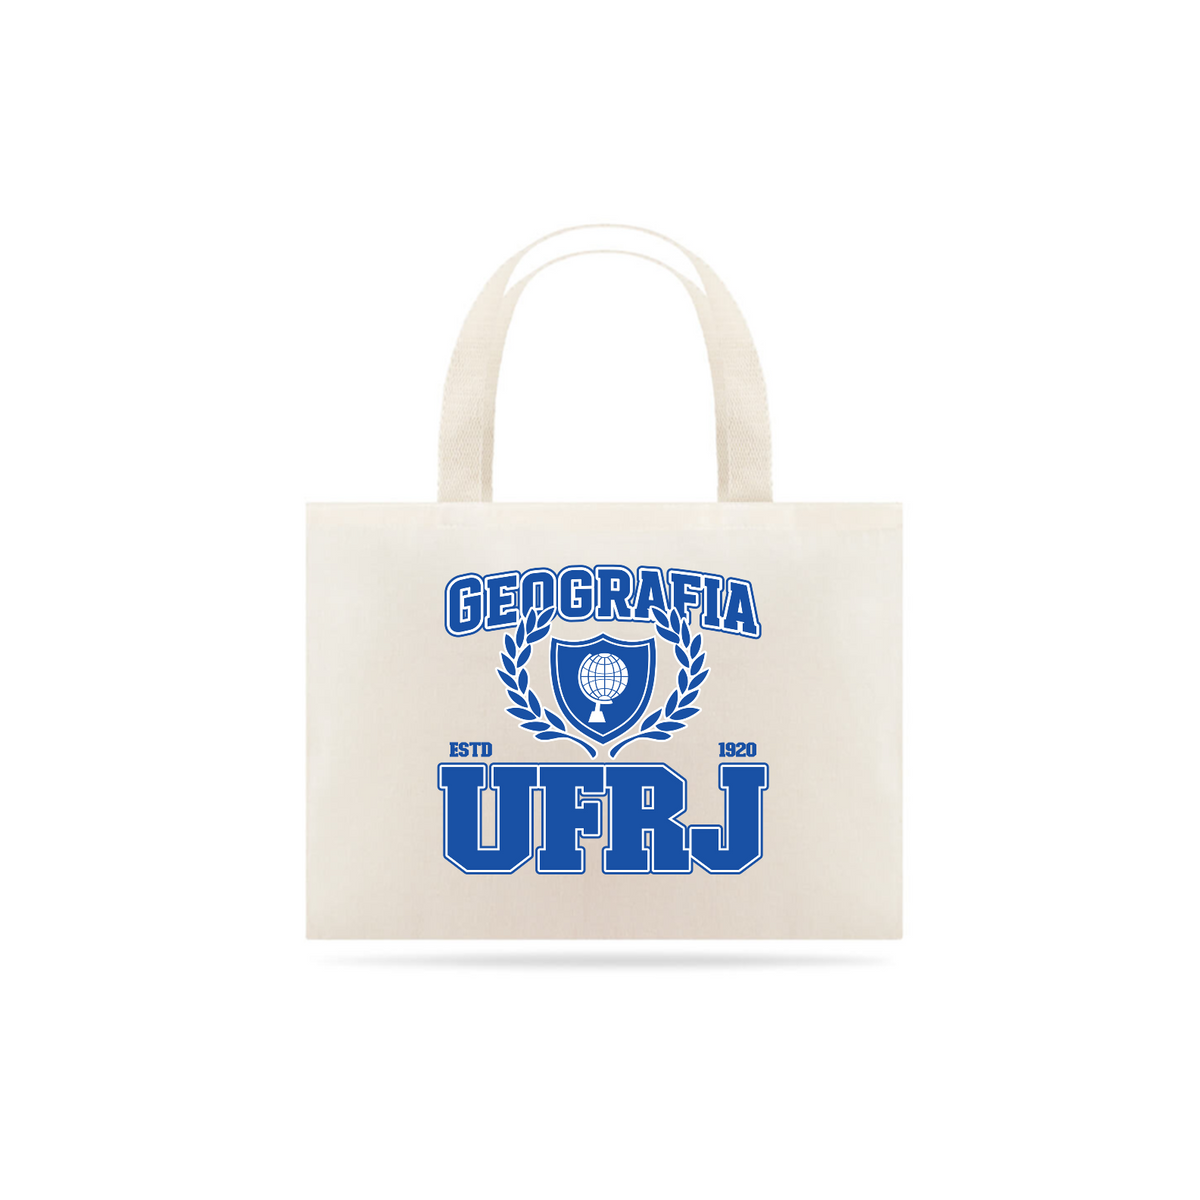 Nome do produto: UniVerso - Ecobag Geografia UFRJ